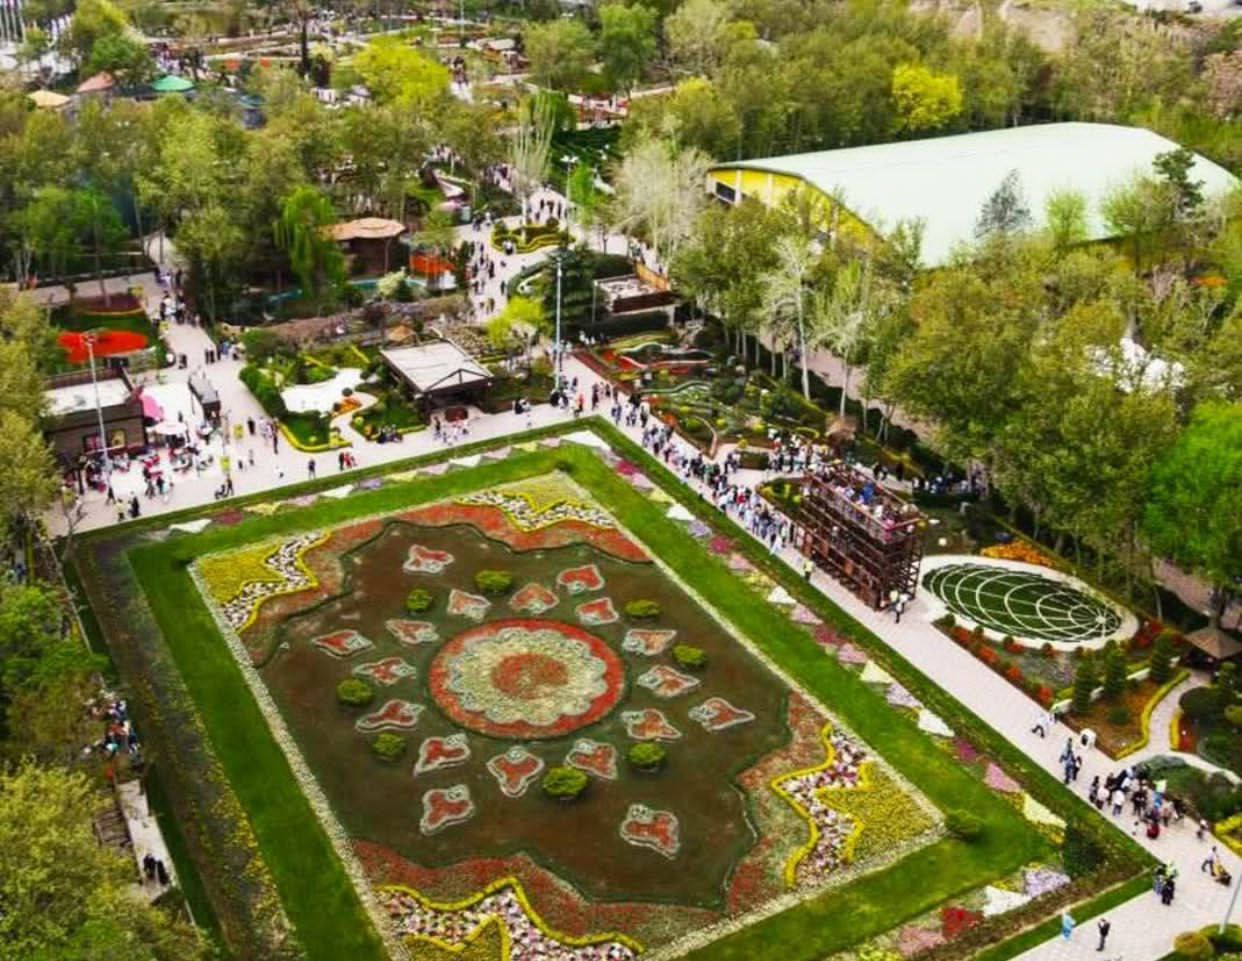 بزرگترین فرش گل خاورمیانه در جشنواره لاله‌های کرج/شهر کرج خواستگاه ترویج گل لاله در کشور شناخته شده است